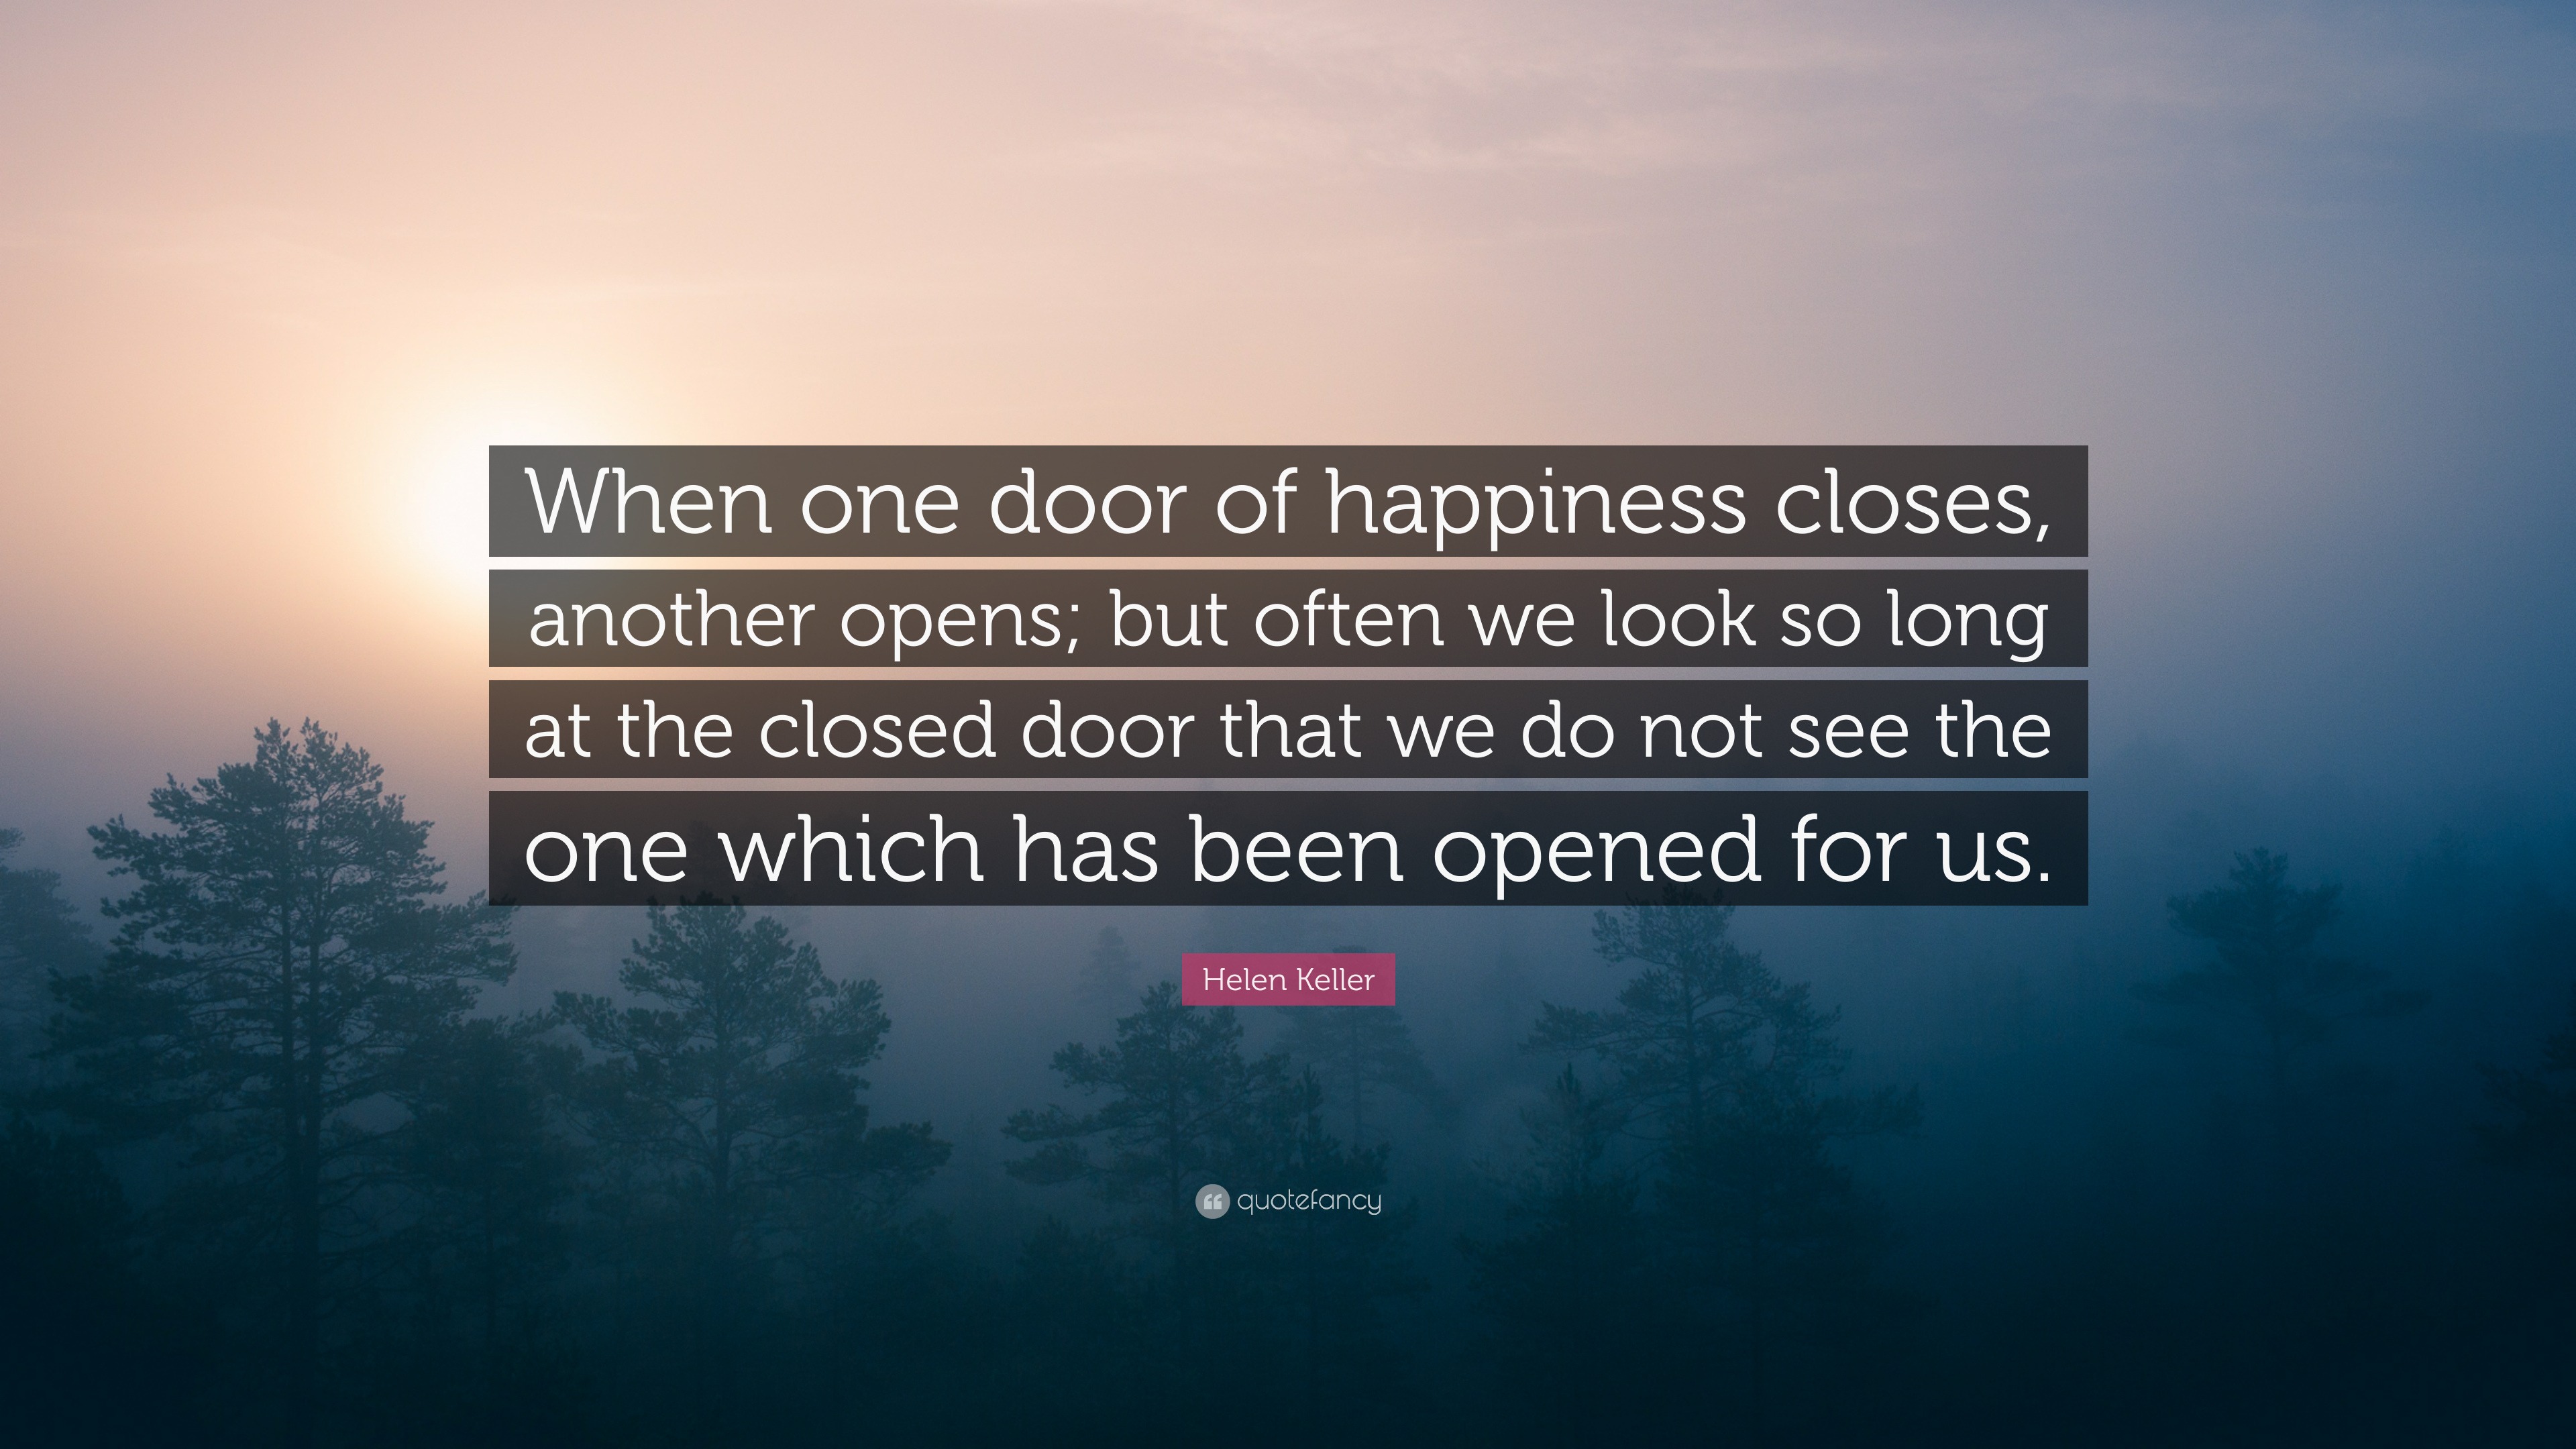 Helen Keller Quote: “When one door of happiness closes, another opens